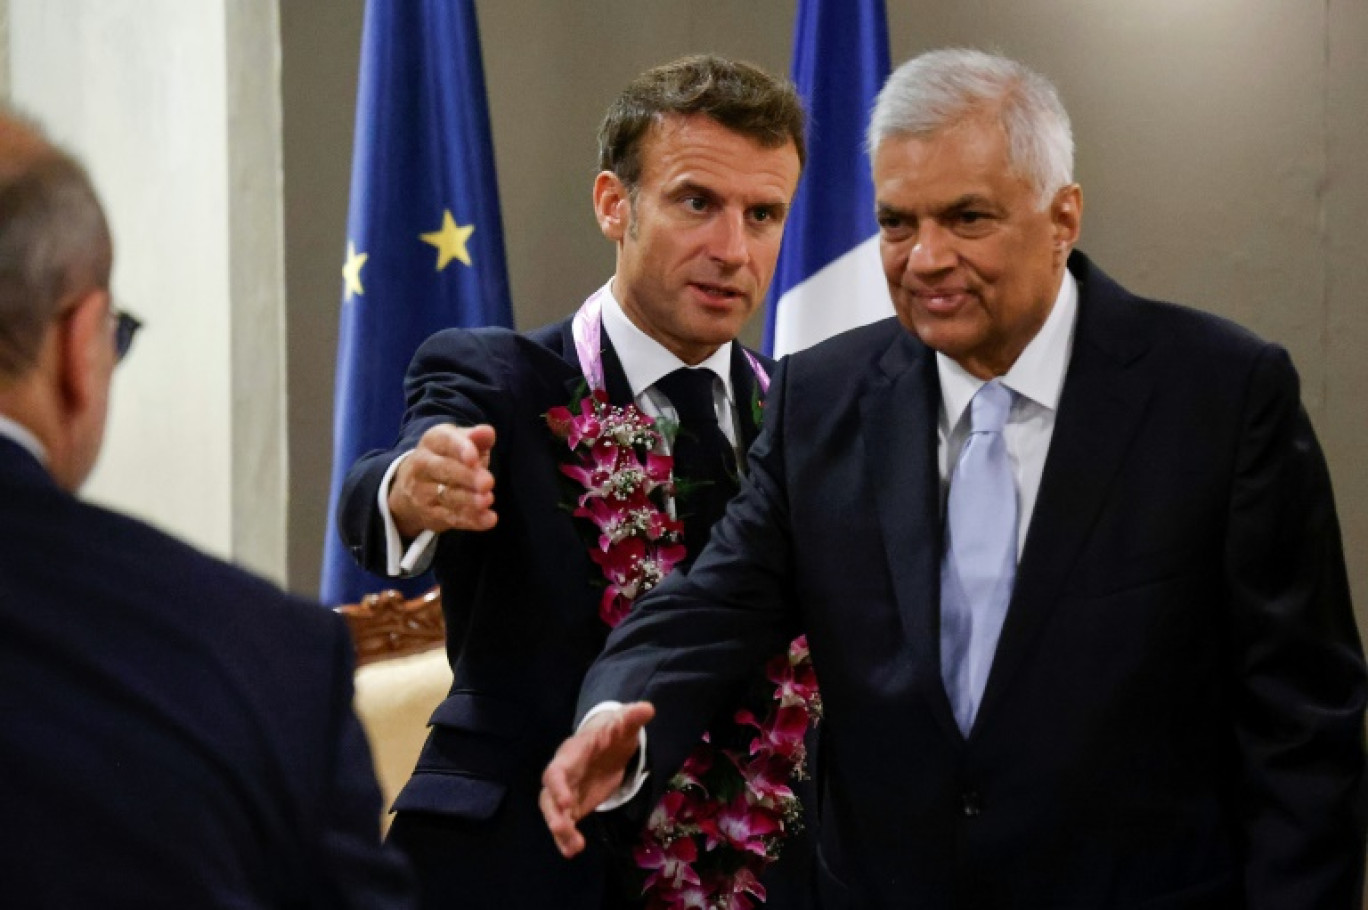 Le président français Emmanuel Macron (C) s'adresse à son homologue srilankais Ranil Wickremesinghe (D) avant des discussions à Colombo, le 28 juillet 2023 © Ludovic MARIN